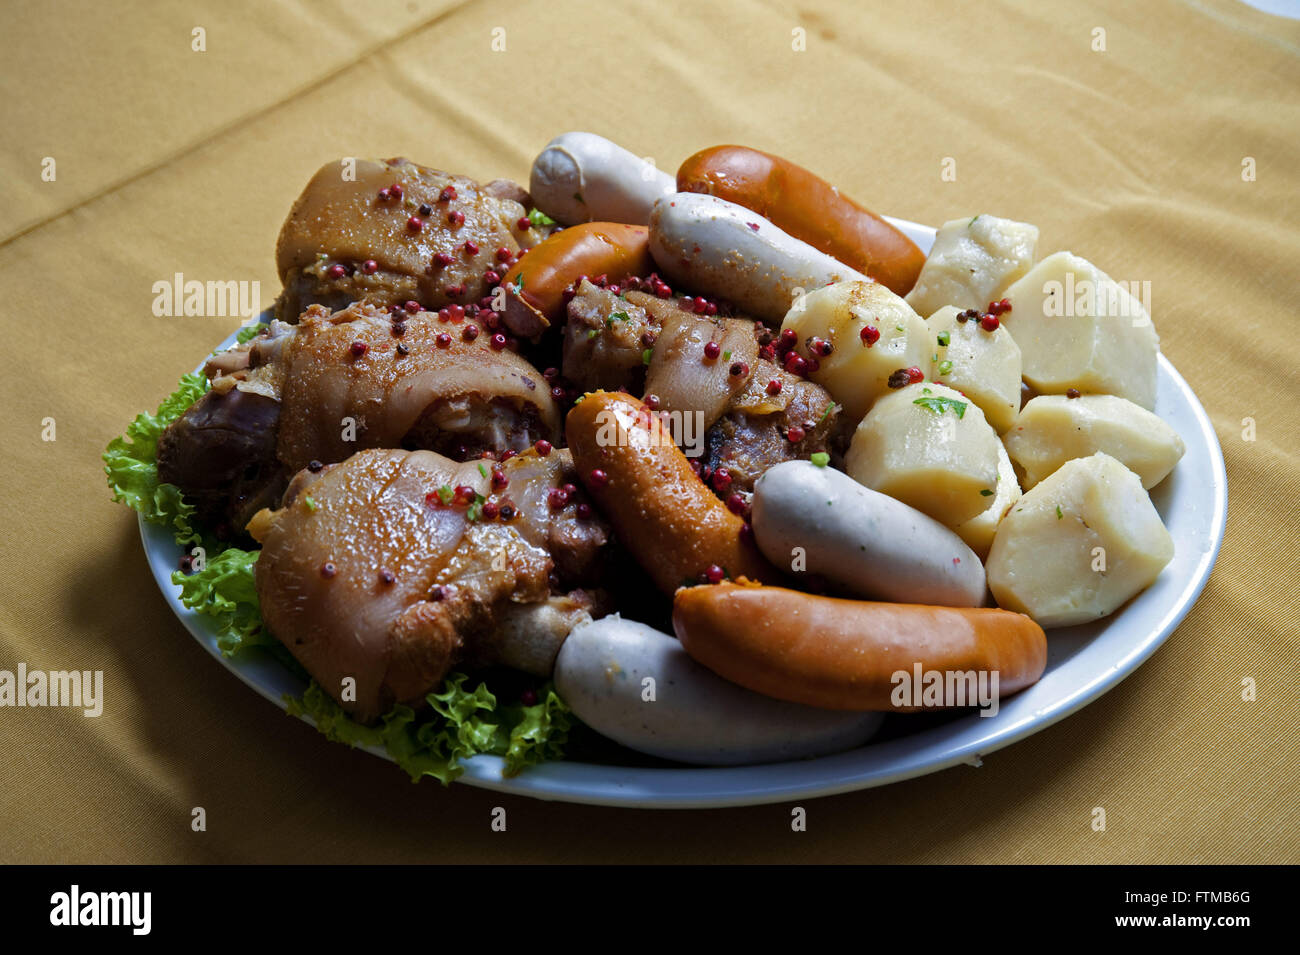 Eisbein - typical German dish served in Blumenau Stock Photo